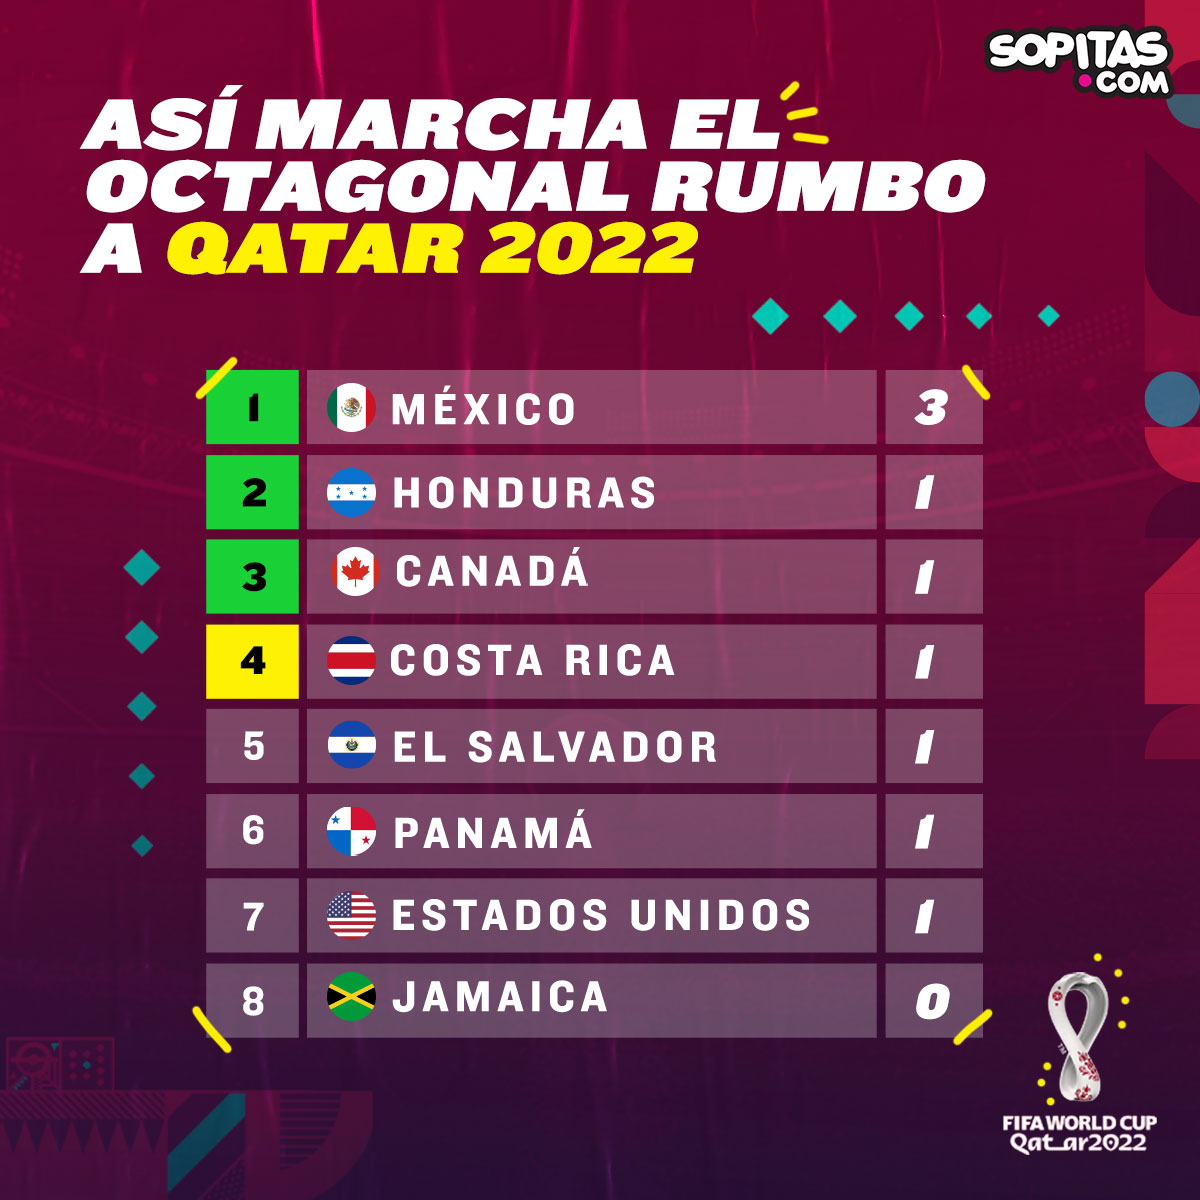 ¿Cómo, cuándo y dónde ver en vivo el Costa Rica vs México rumbo a Qatar 2022?